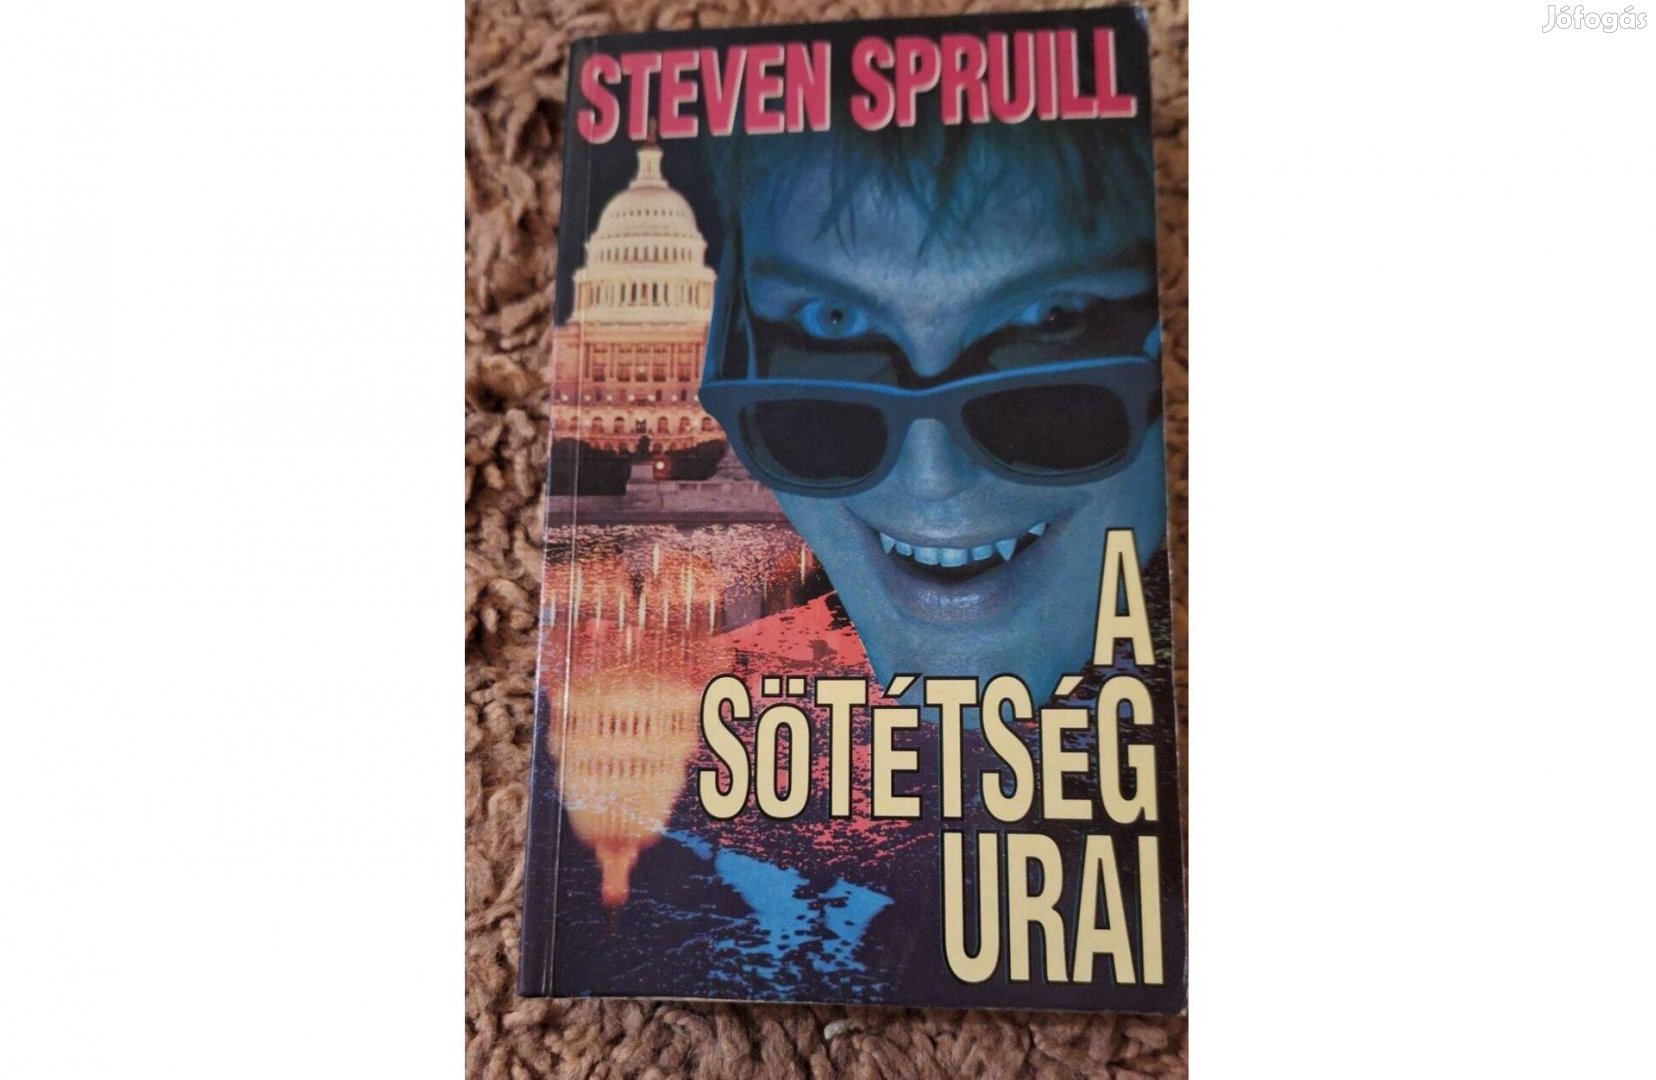 Steven Spruill - A sötétség urai